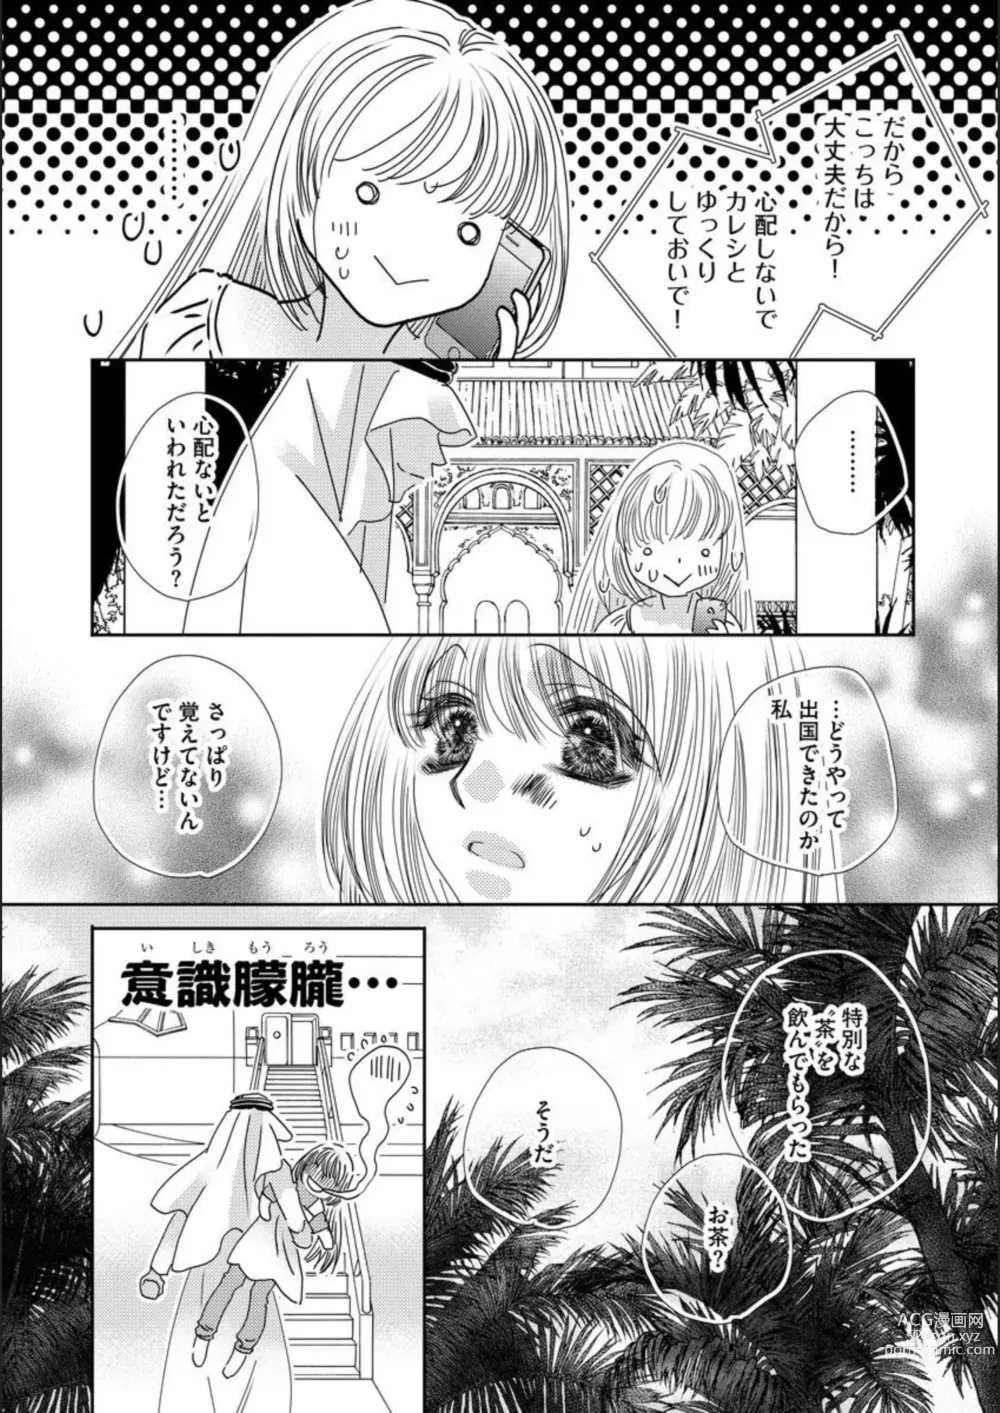 Page 18 of manga Ore-sama Seek no Hanayome Dorei 1